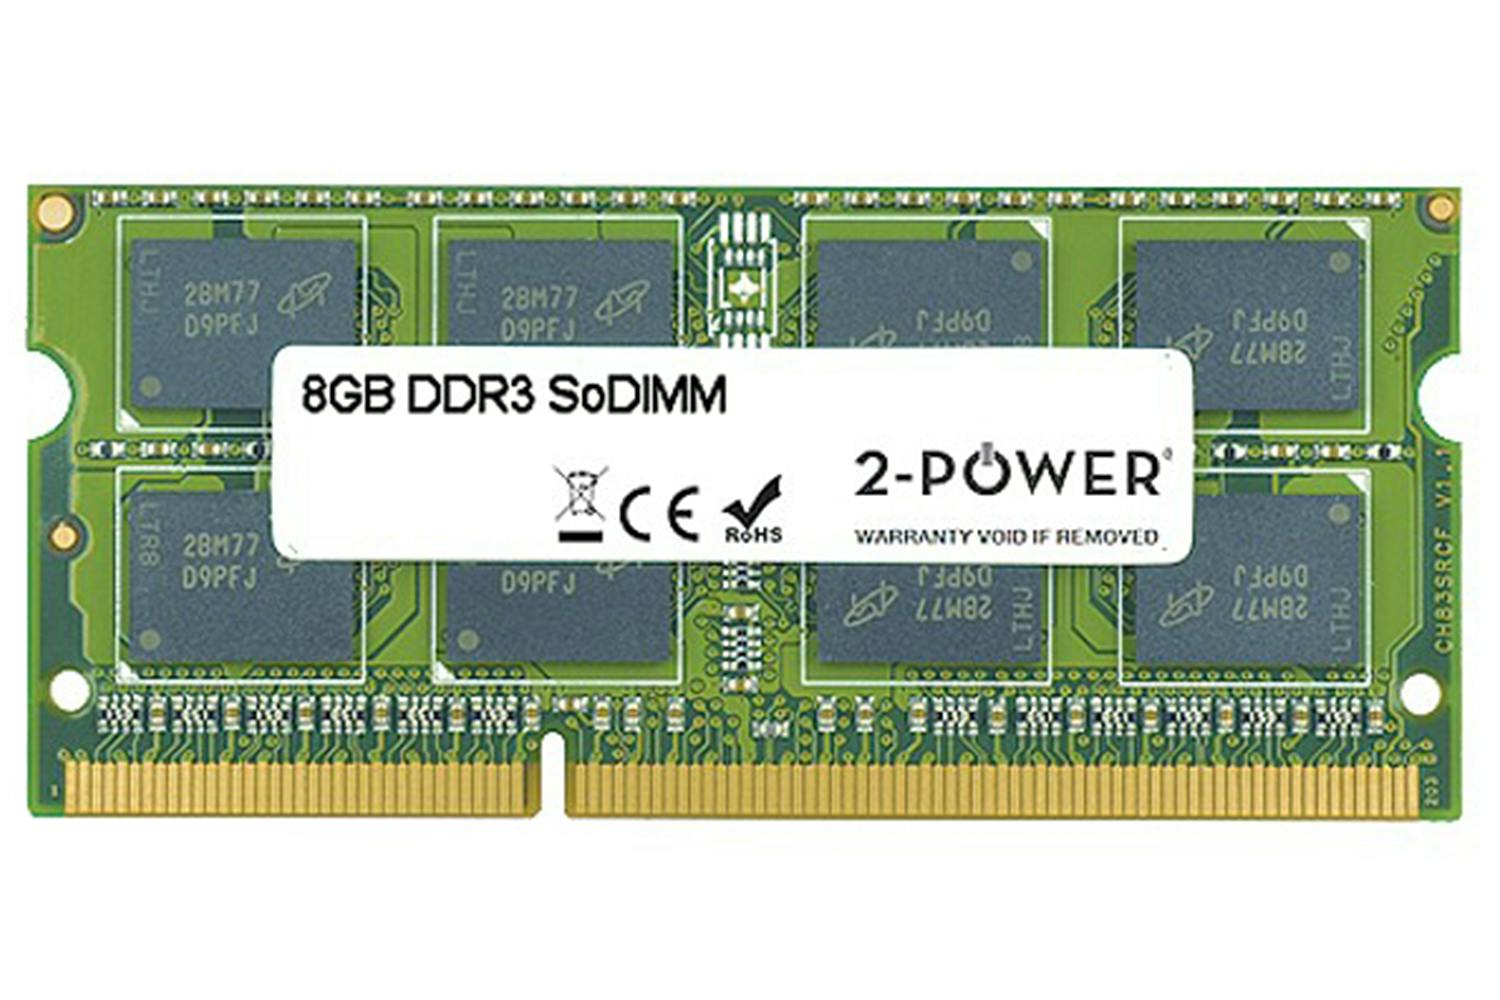 2-Power MultiSpeed 1066/1333/1600 MHz SoDIMM Memory Module | 8GB